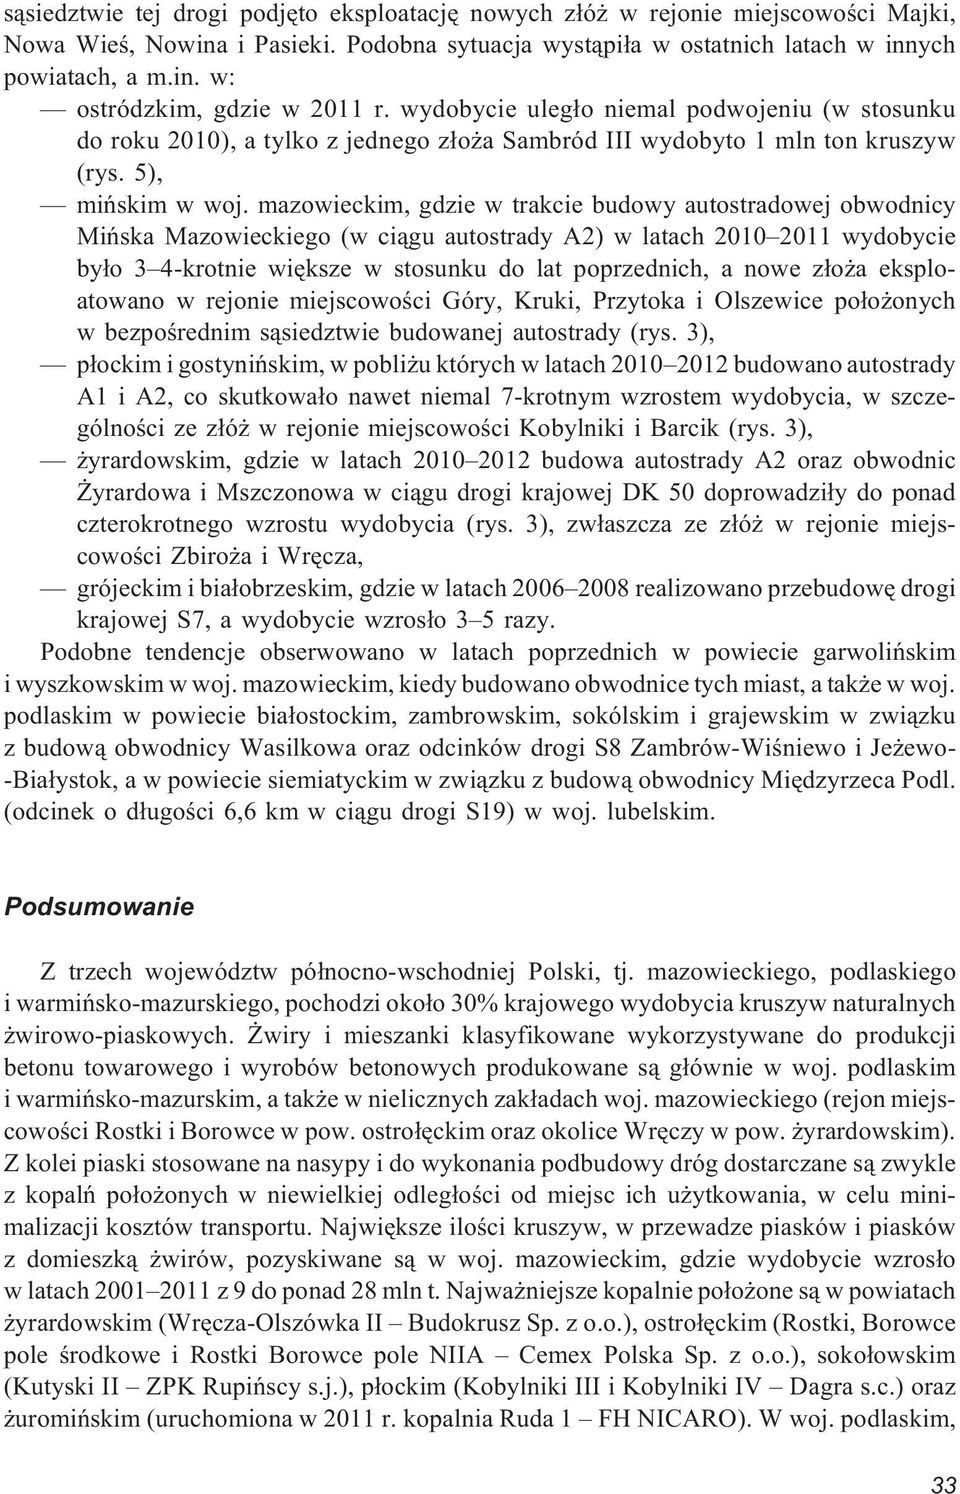 mazowieckim, gdzie w trakcie budowy autostradowej obwodnicy Miñska Mazowieckiego (w ci¹gu autostrady A2) w latach 2010 2011 wydobycie by³o 3 4-krotnie wiêksze w stosunku do lat poprzednich, a nowe